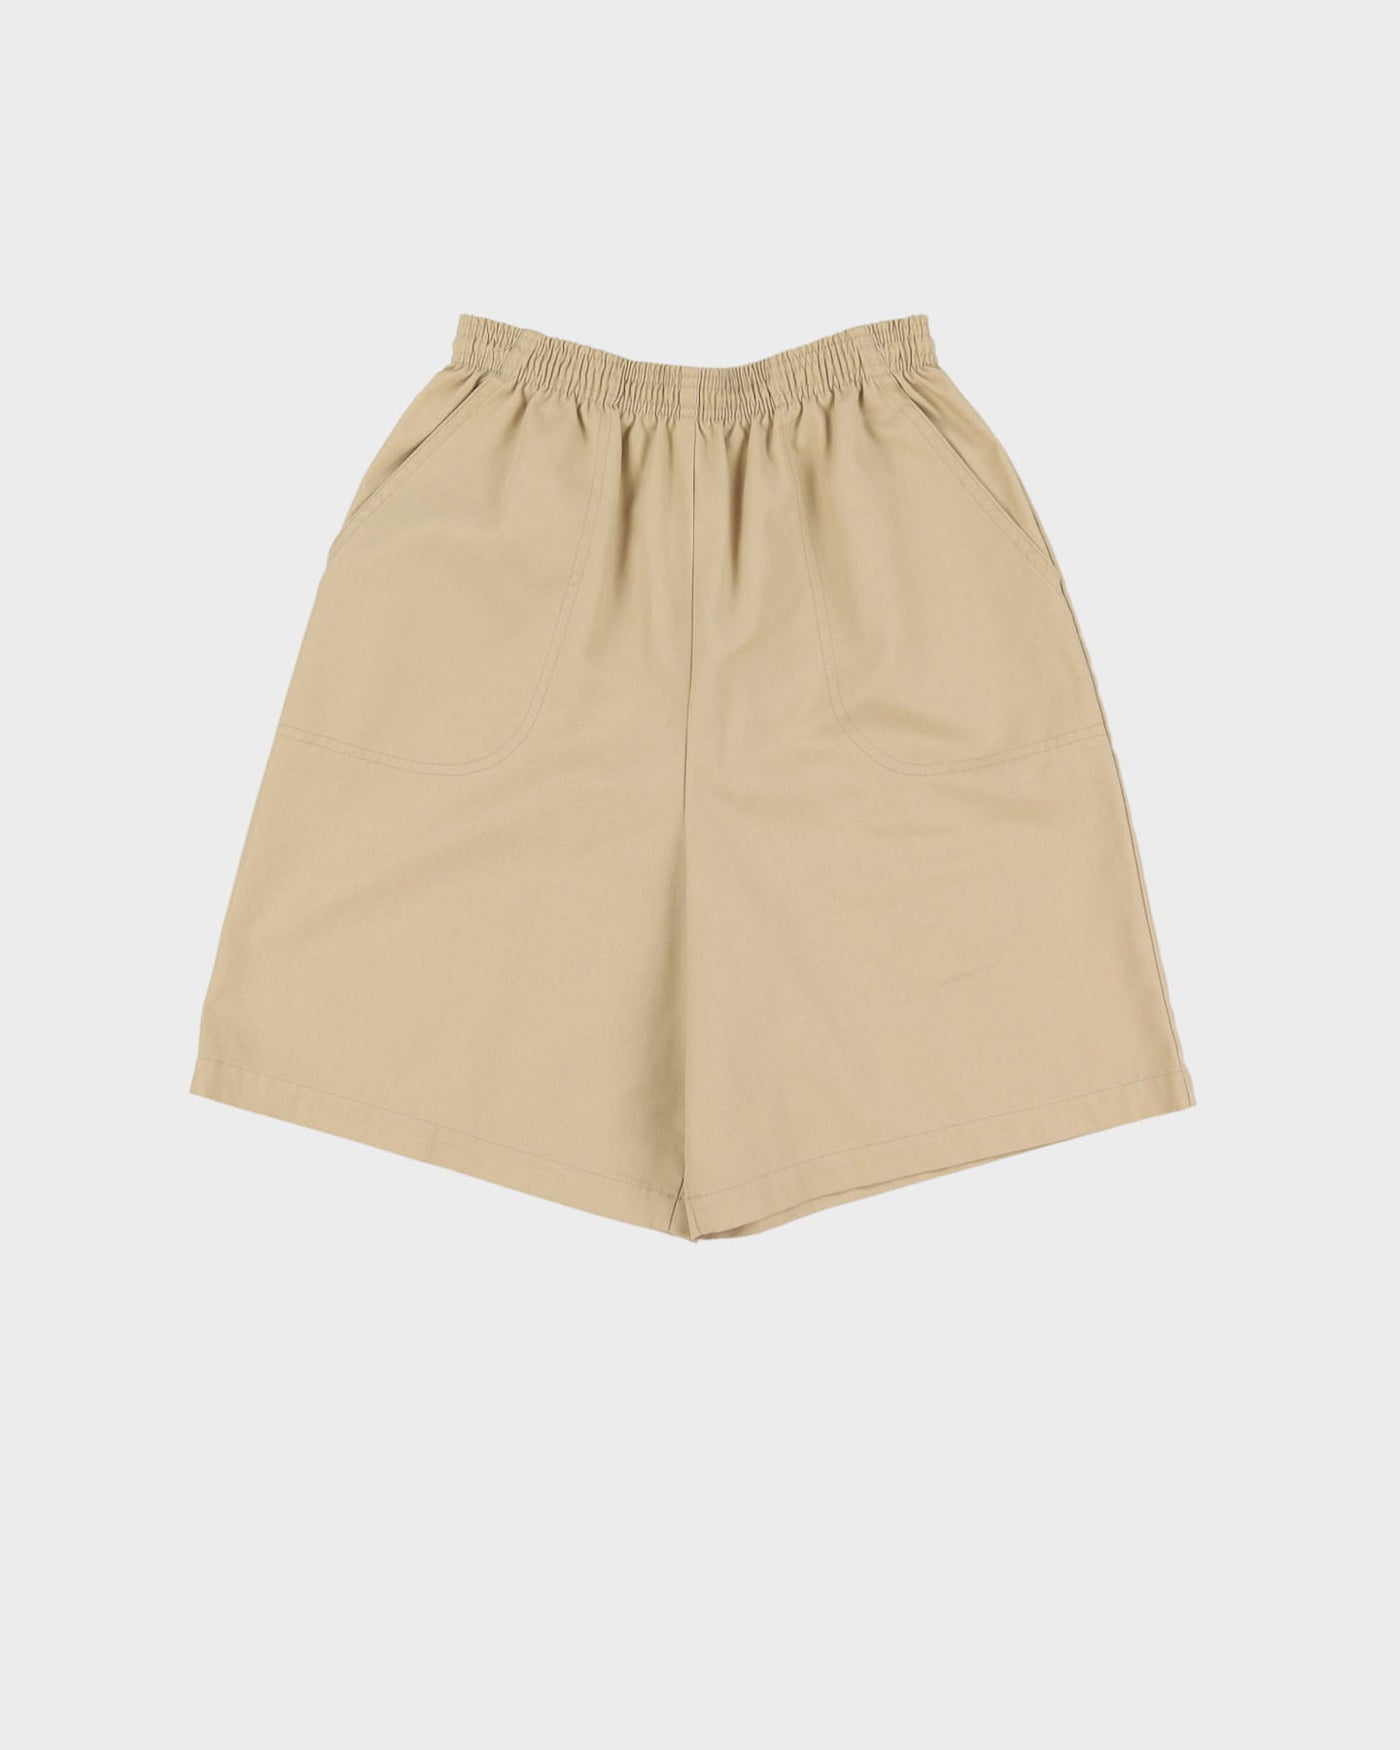 Vintage 90s Koret Beige High Waist Shorts - W26